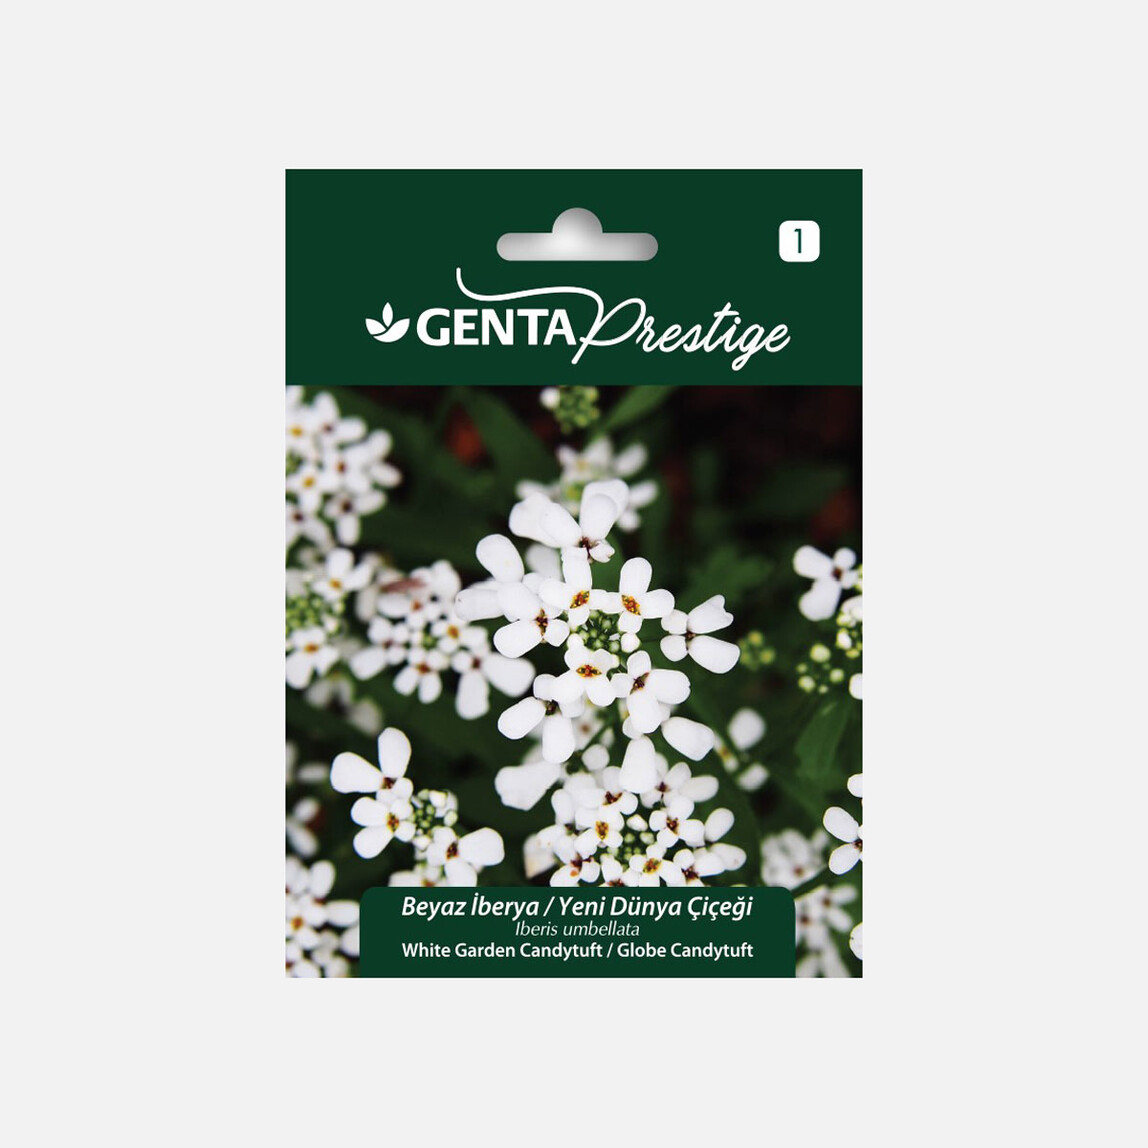    Genta Prestige Beyaz İberya Yeni Dünya Çiçeği Tohumu  